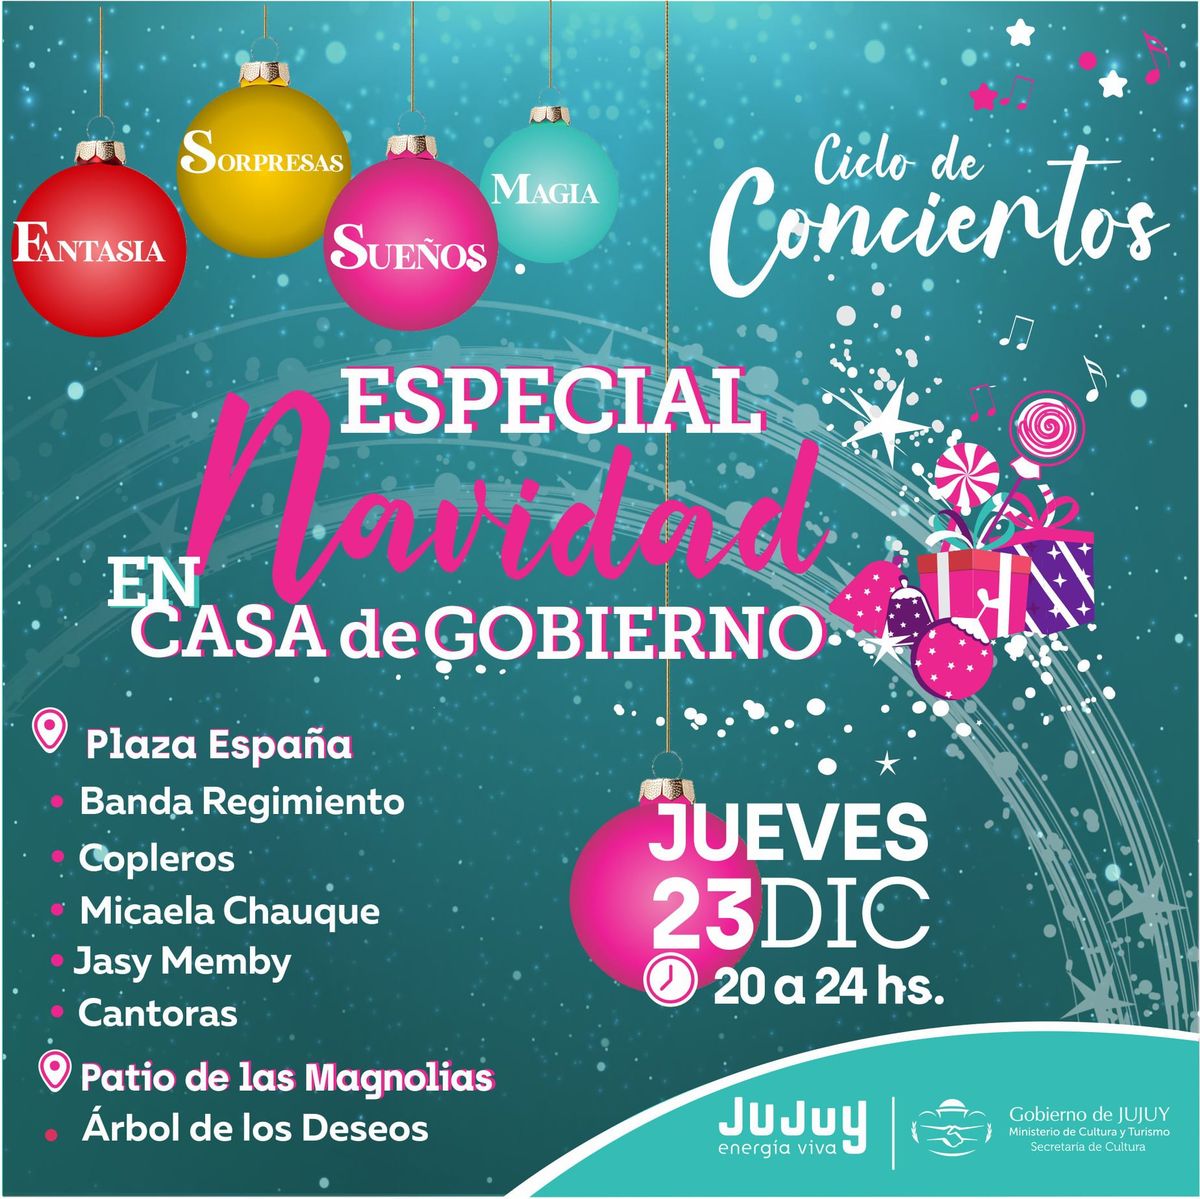 Show de luces y música en la Plaza España para vivir la magia de la Navidad